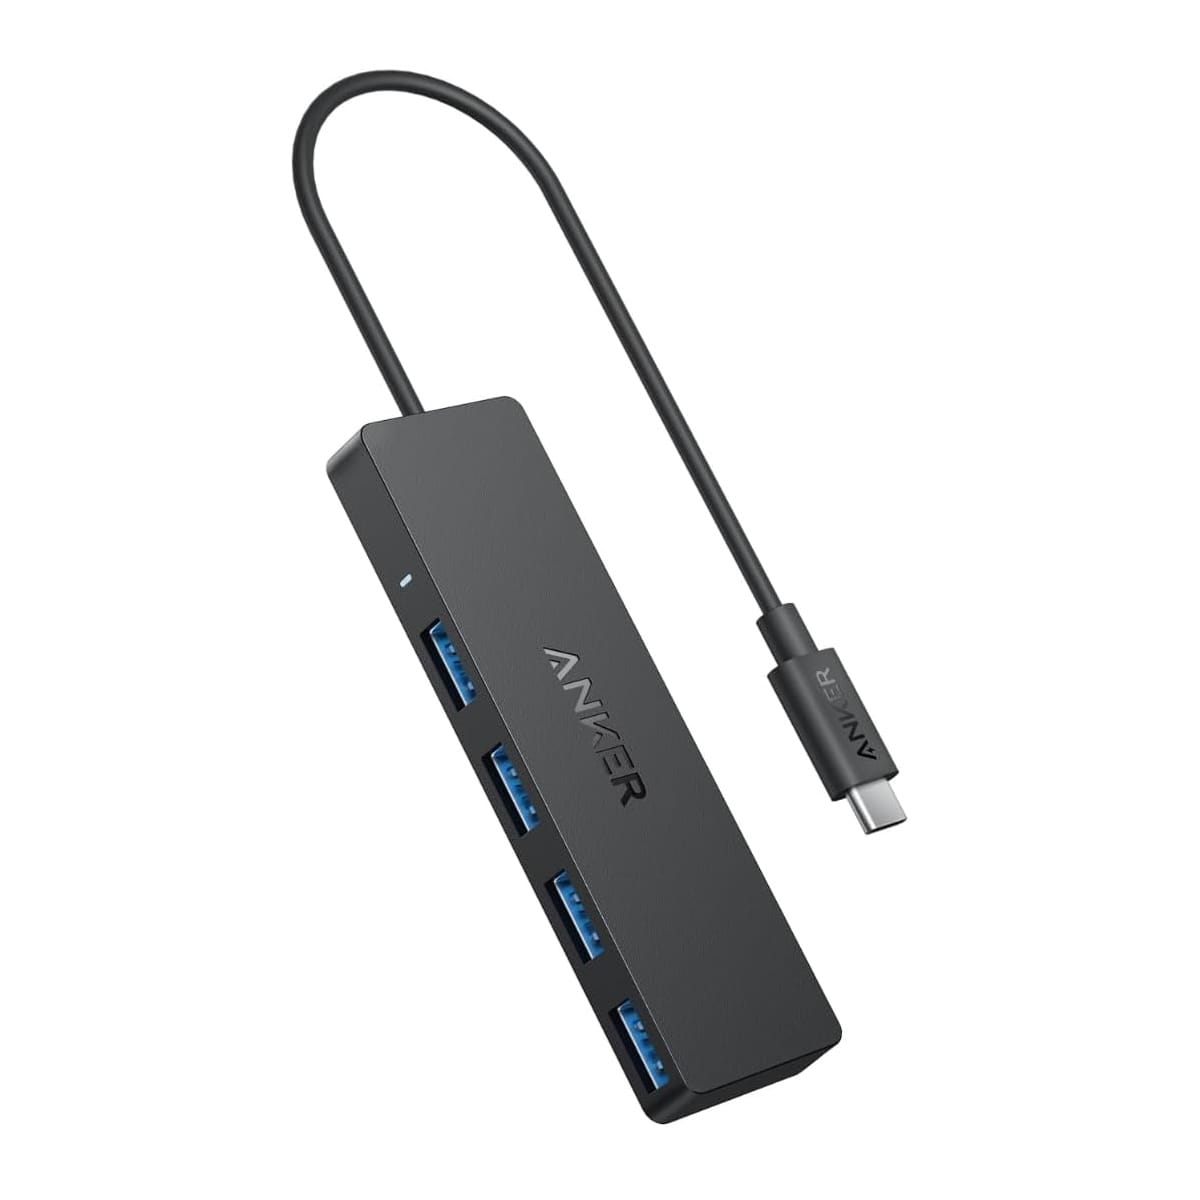 Anker、USB-C接続の4ポートUSB 3.0ハブを発売